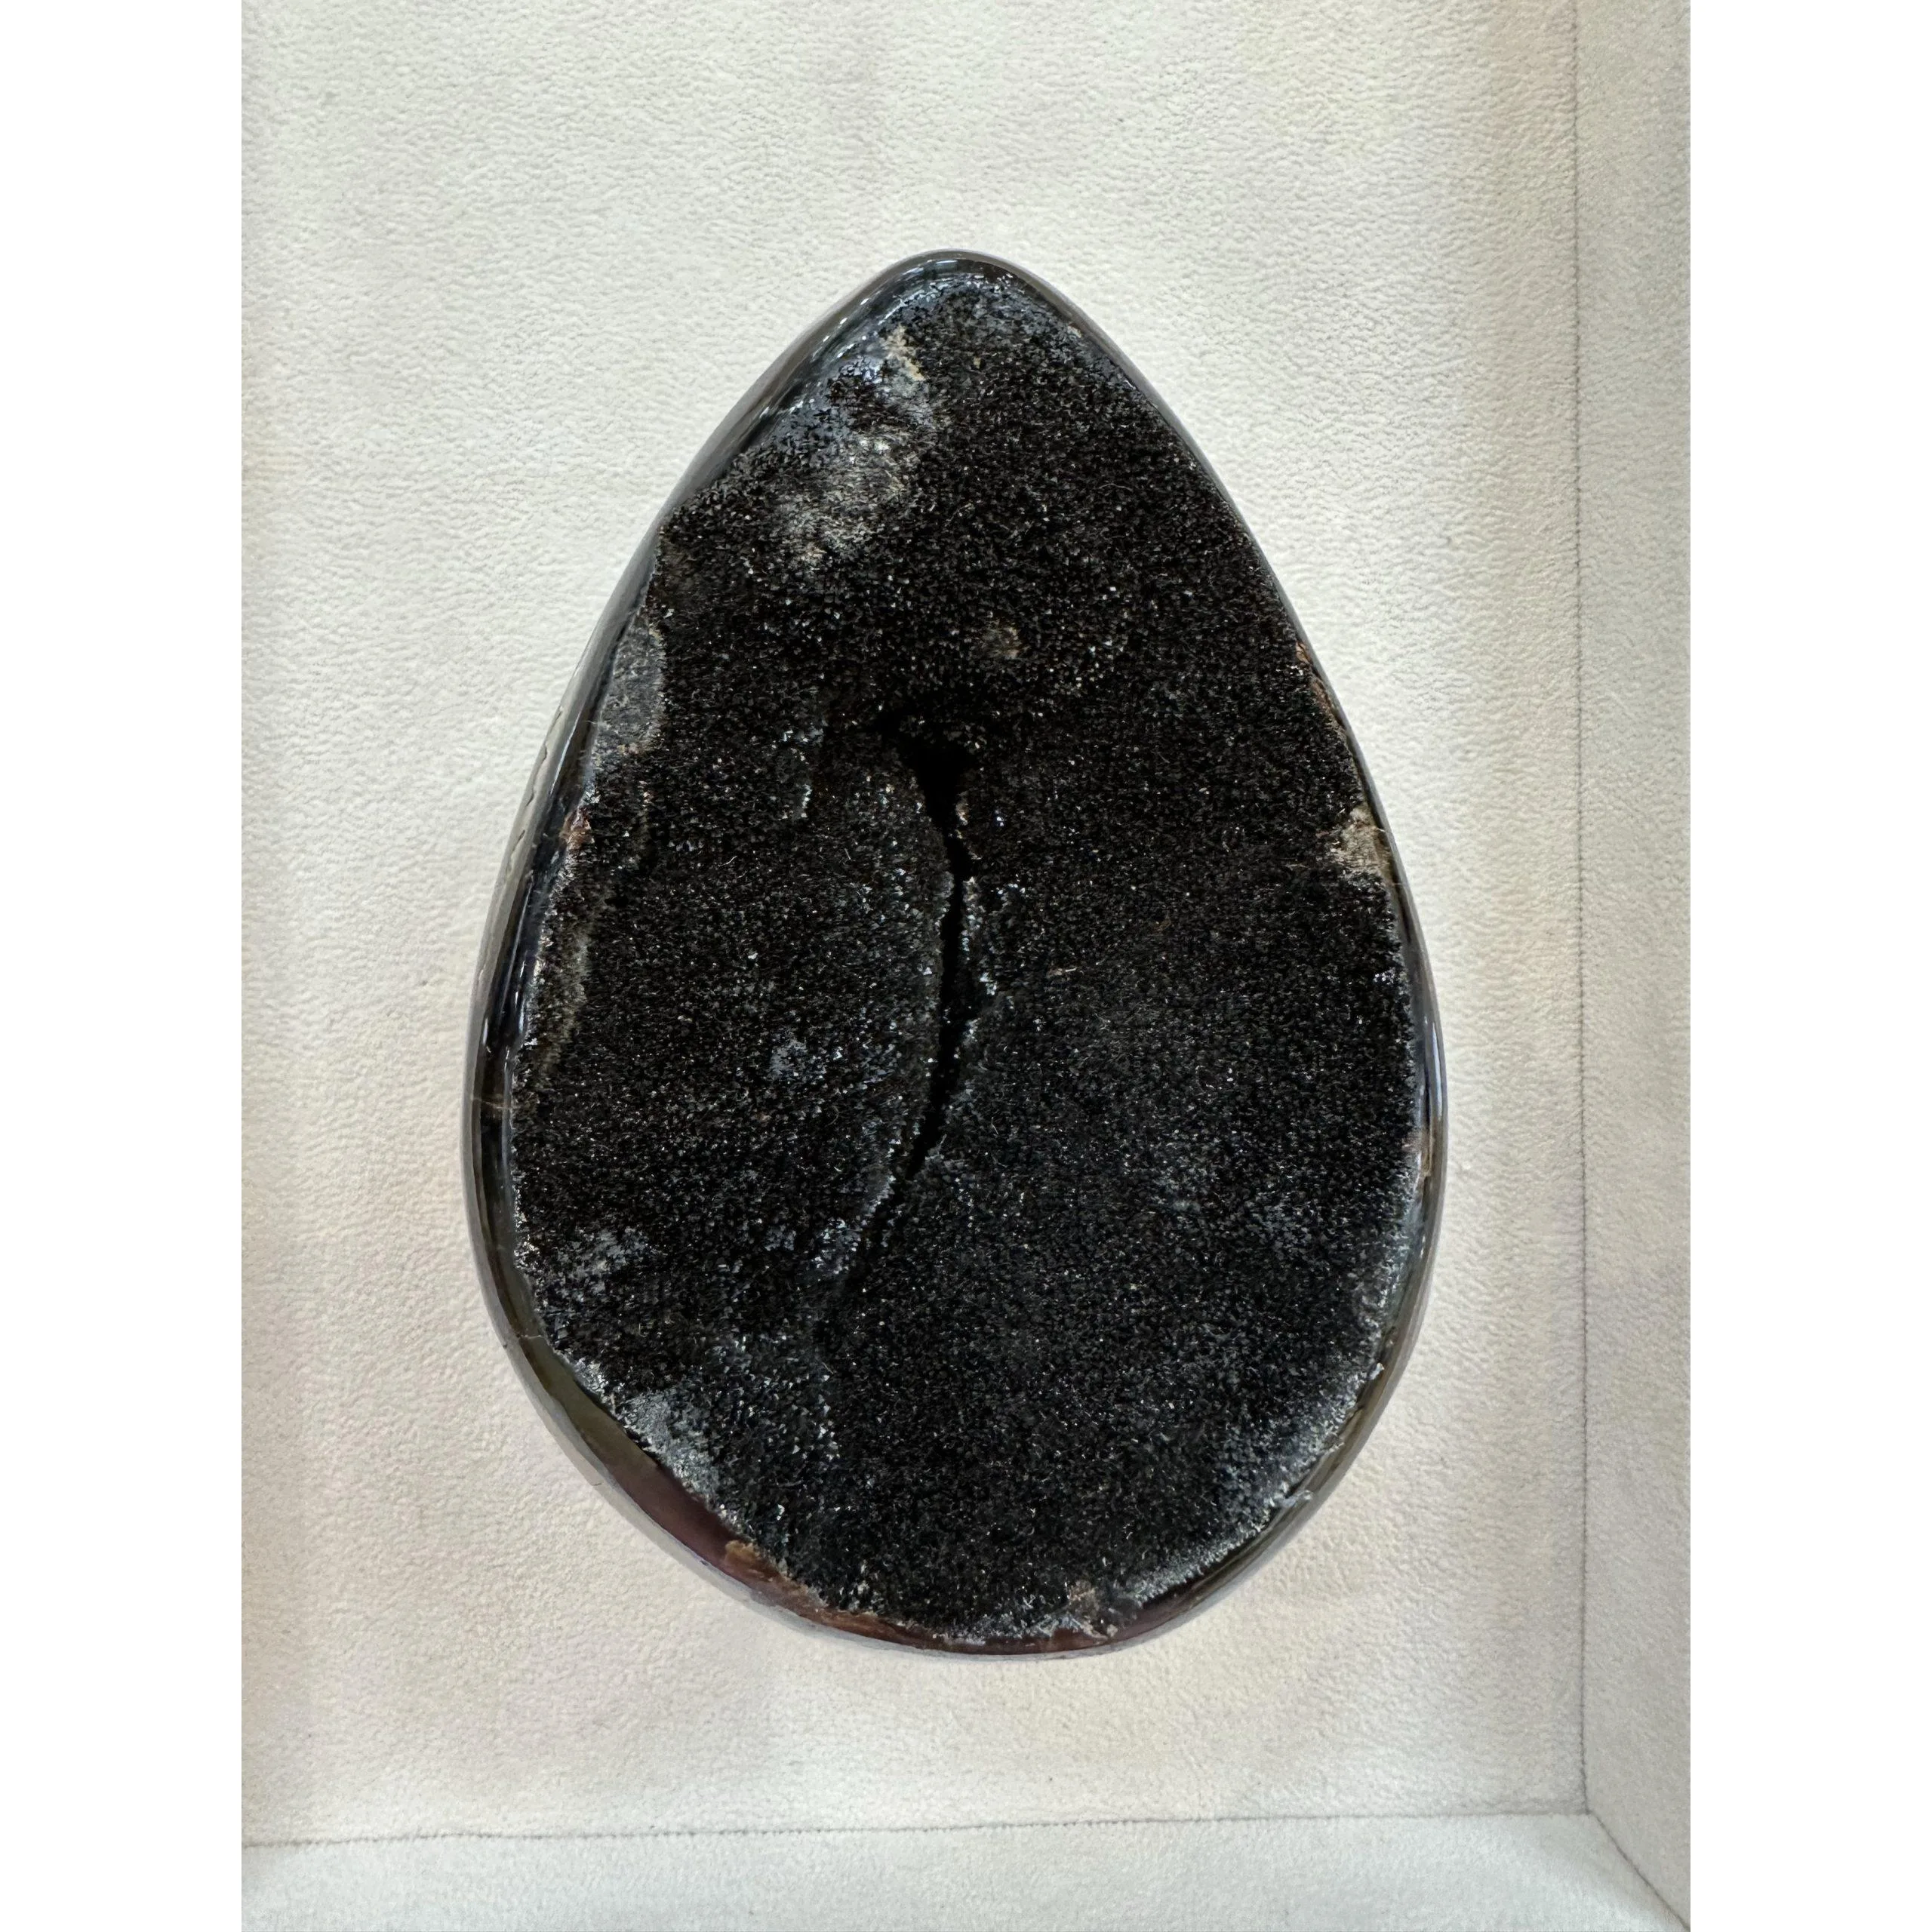 Septarian Dragon Egg – 5 inch, huge carving Prehistoric Online